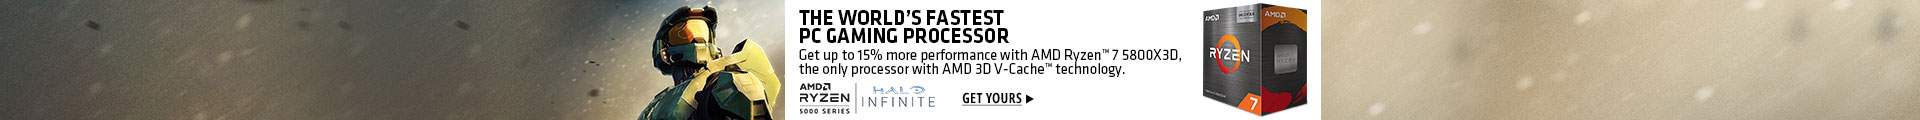 AMD Ryzen The World's Fastest